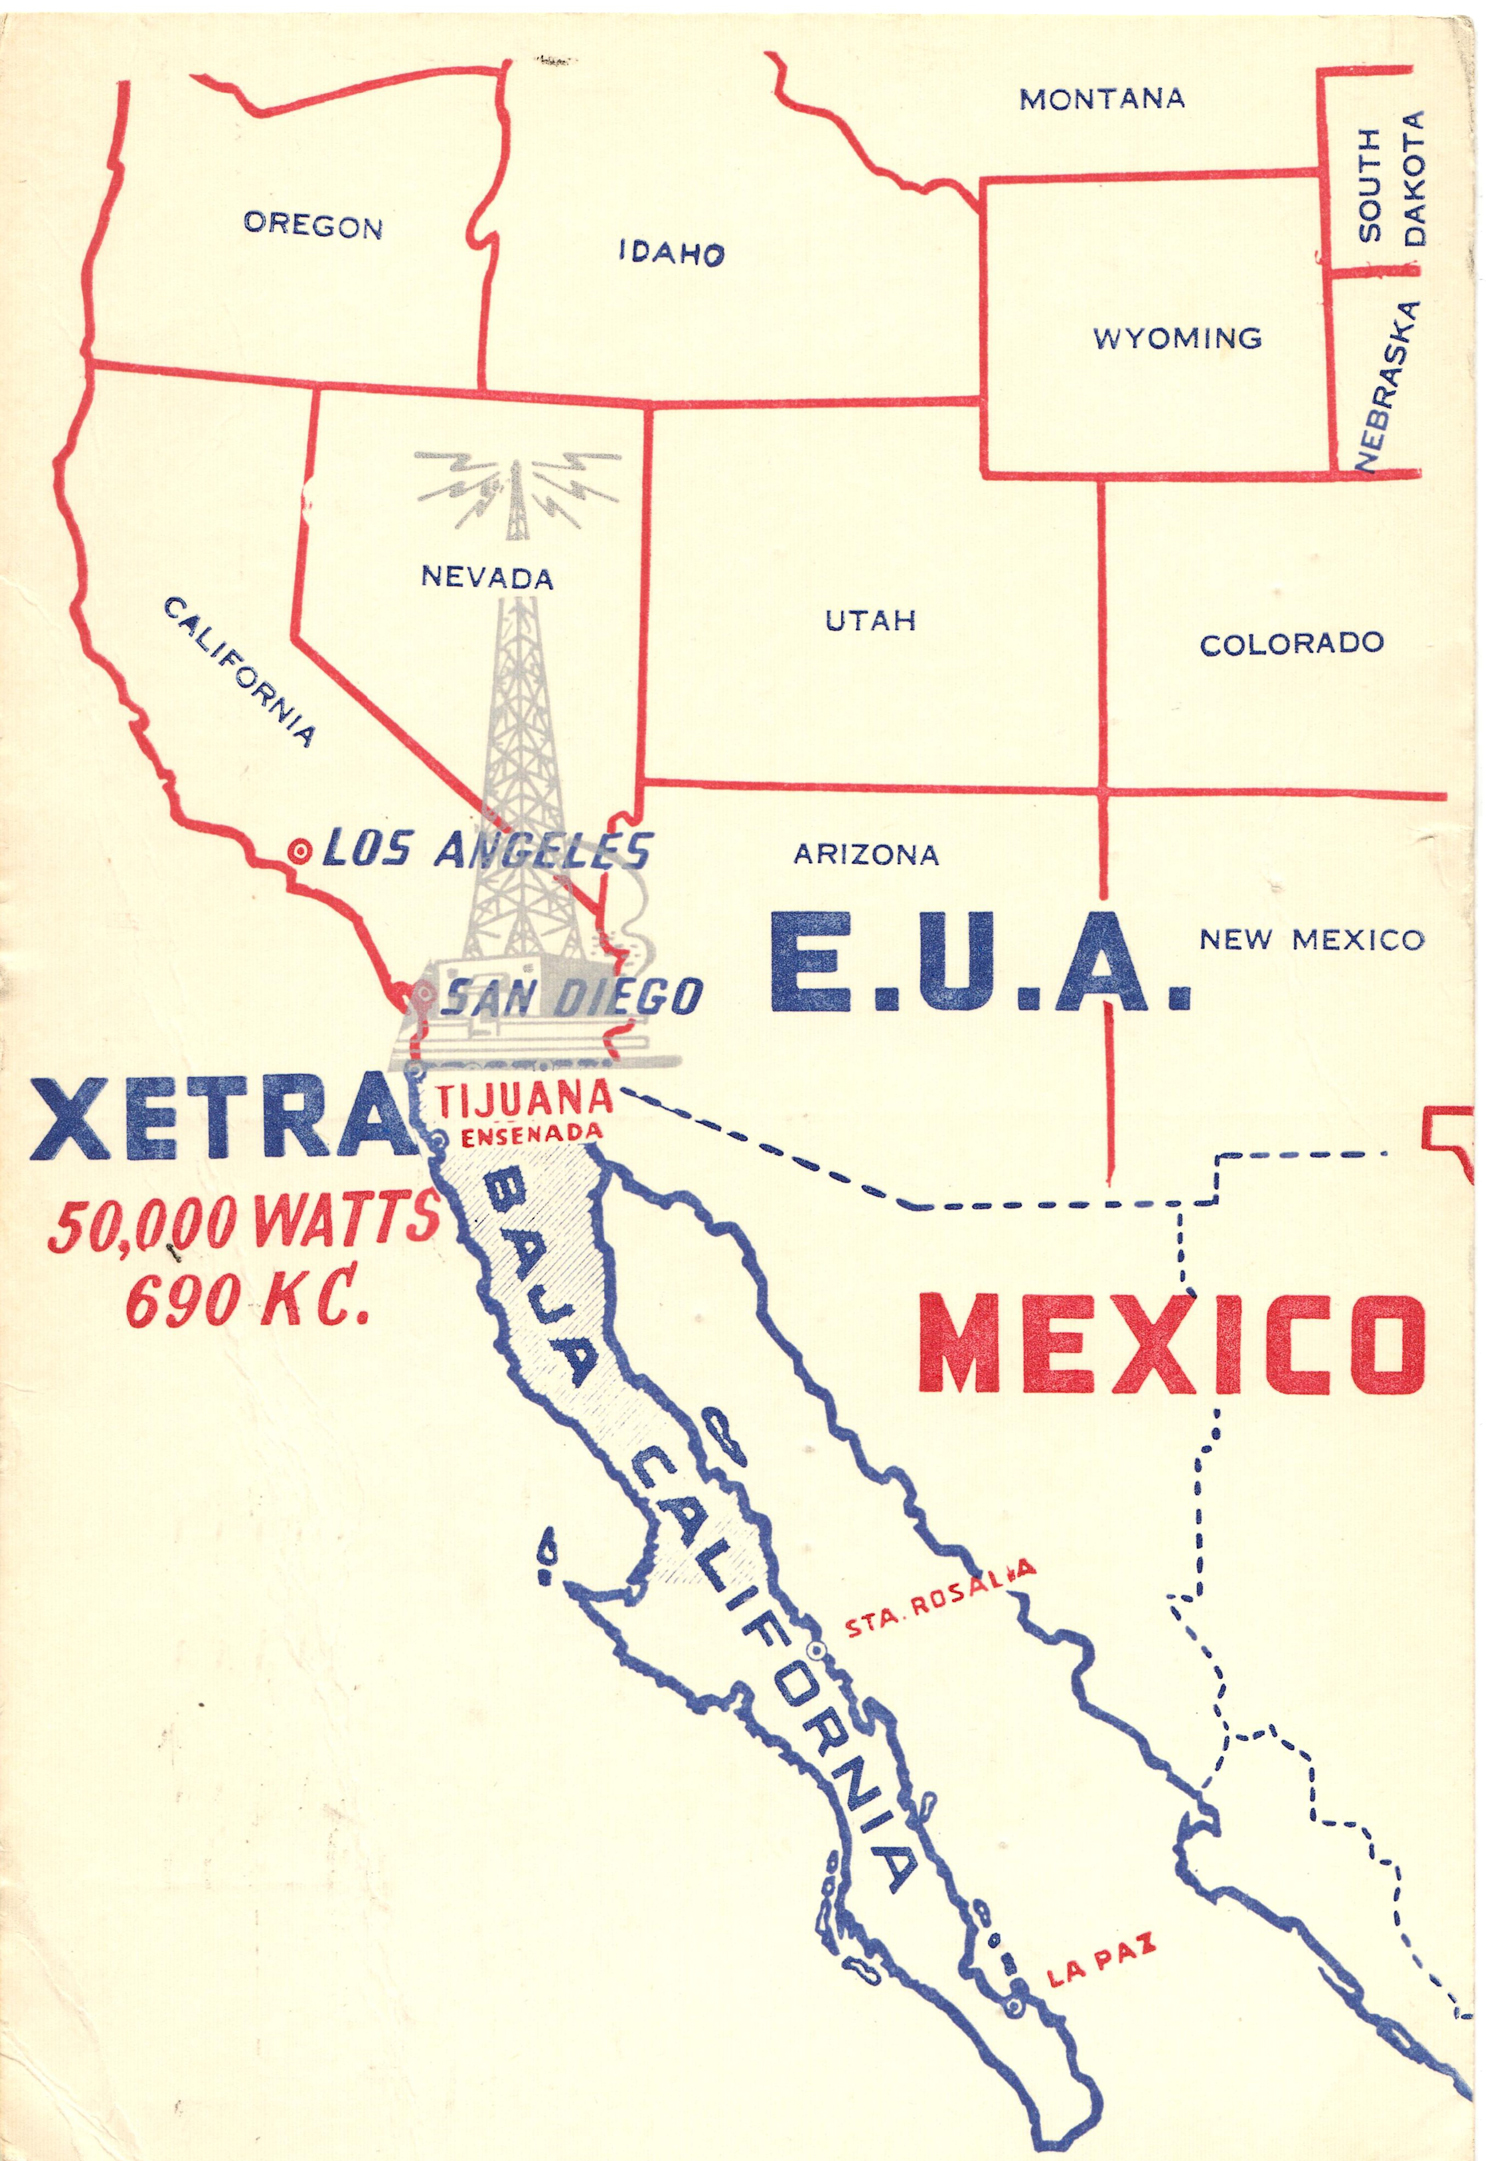 XETRA Radio 690 Tijuana, Baja California, Mexico